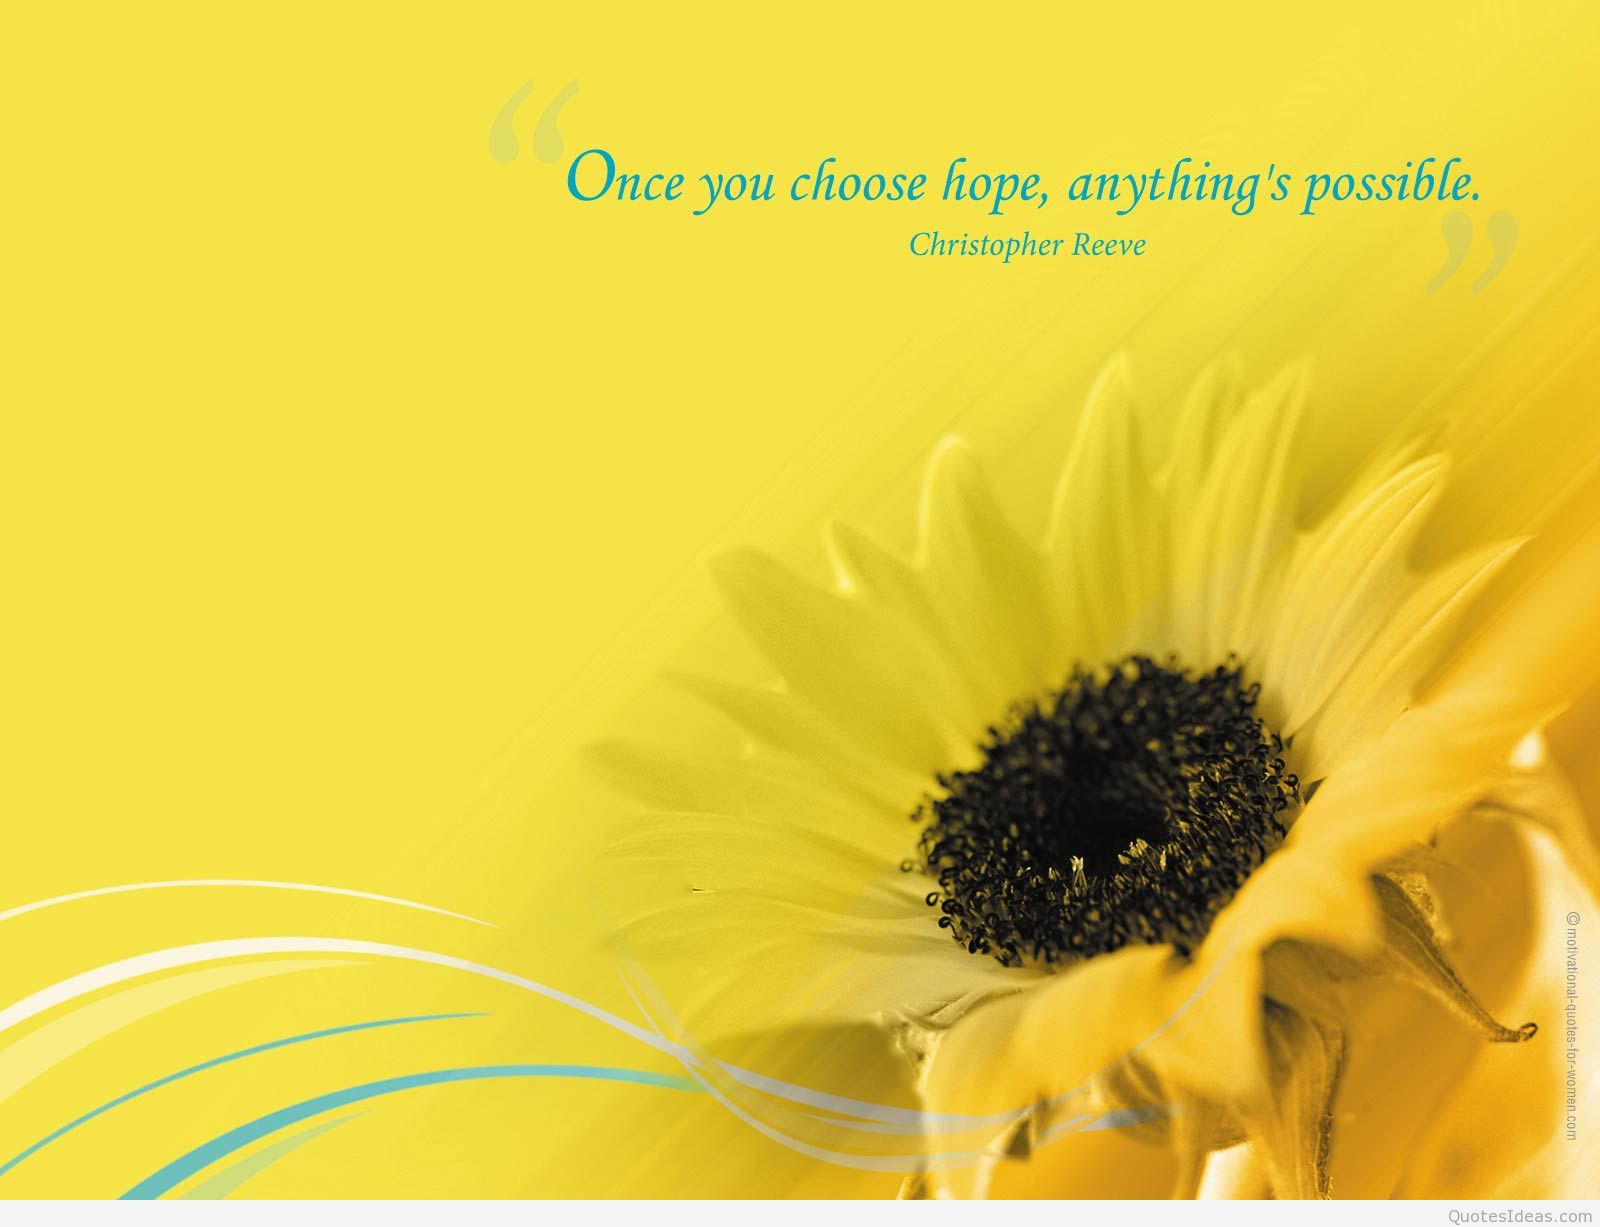 inspirierende zitate wallpaper hd kostenloser download,sonnenblume,gelb,blume,sonnenblume,text